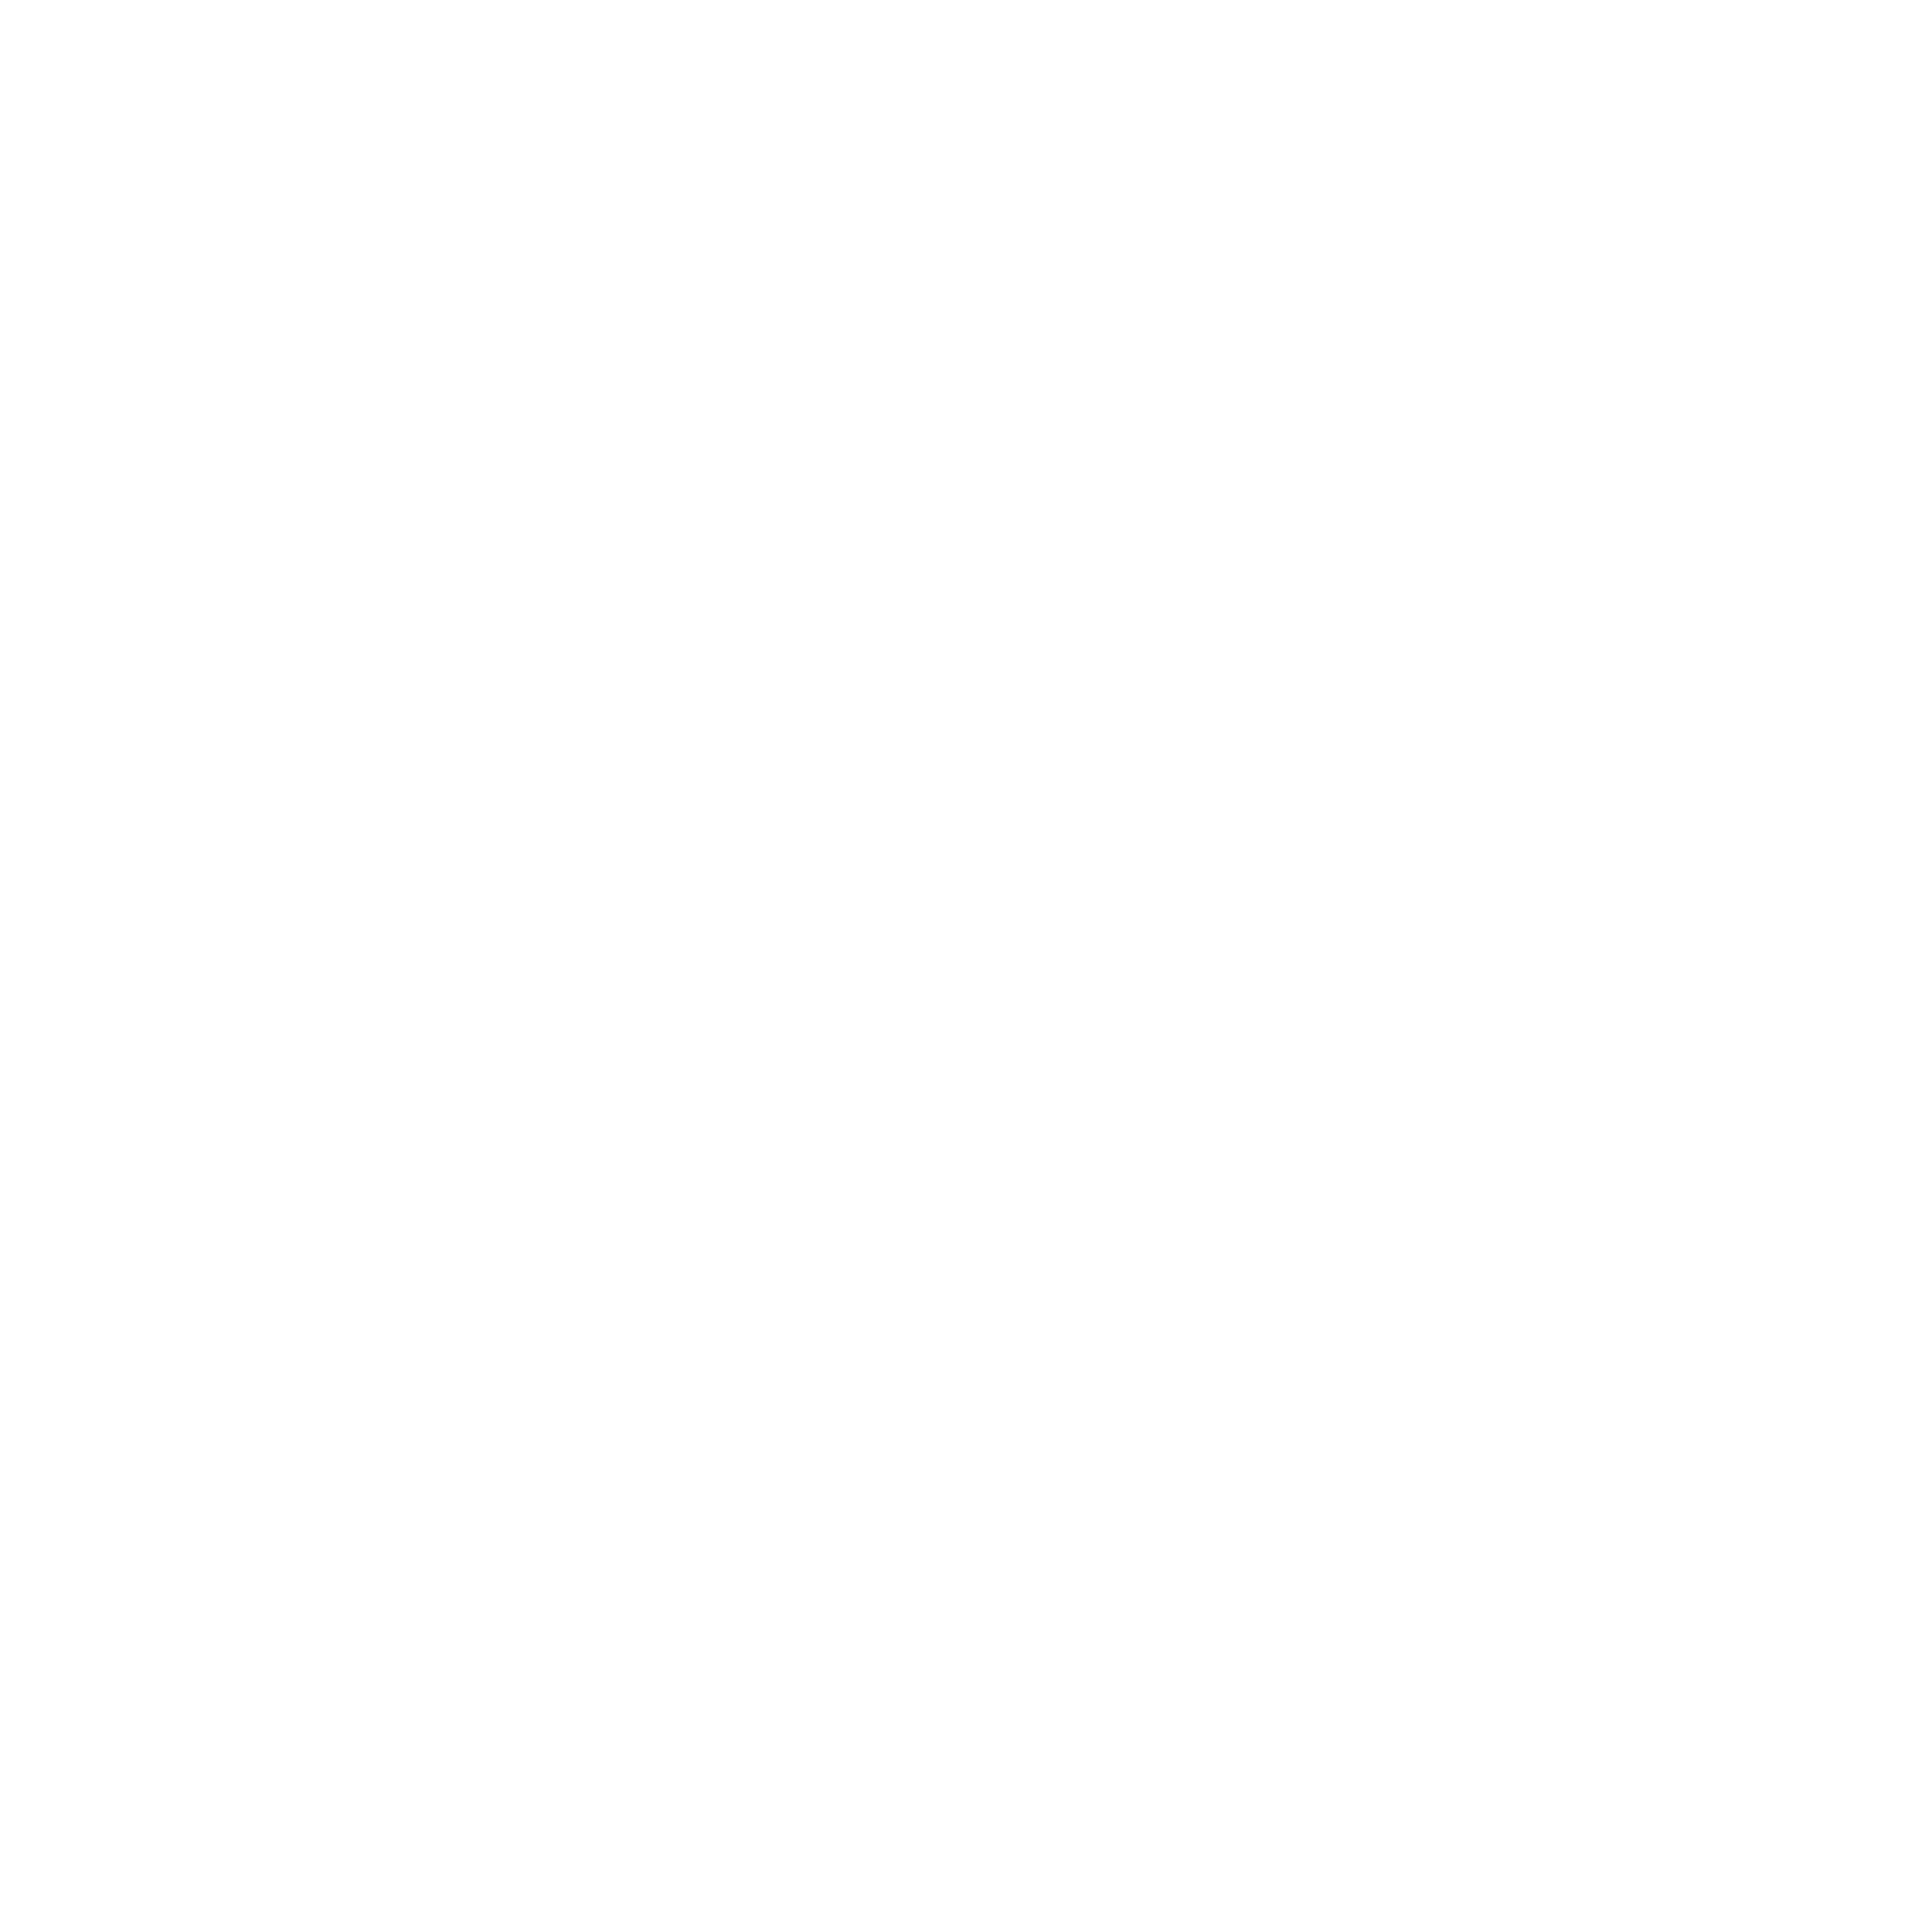 Colorado Access